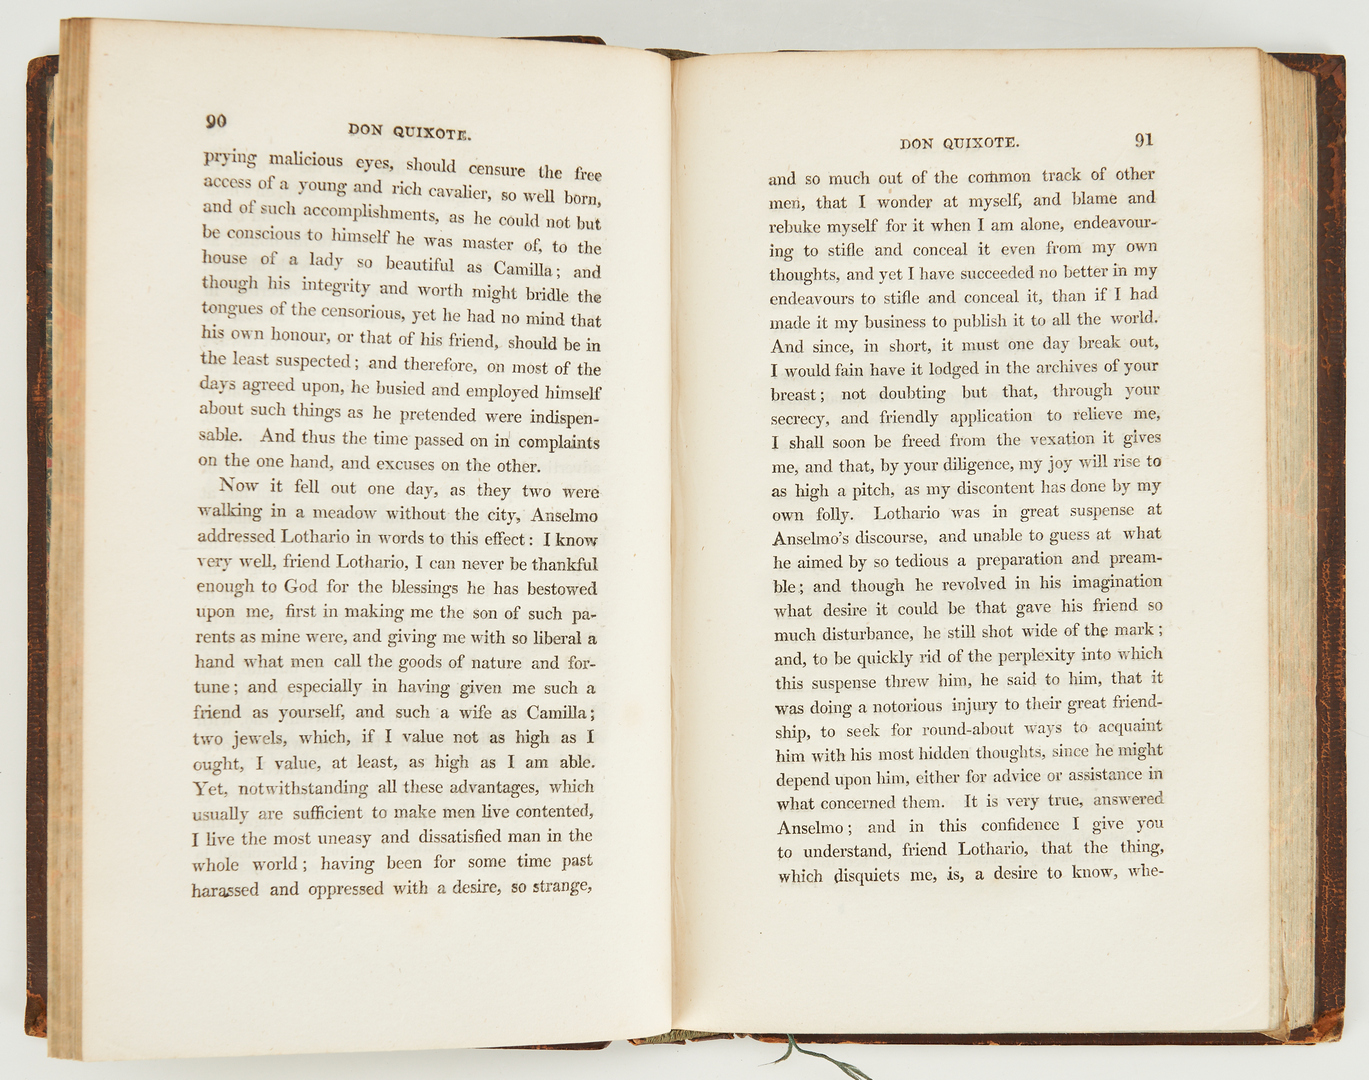 Lot 379: Jarvis, DON QUIXOTE DE LA MANCHA, Vol. I-IV, 1819